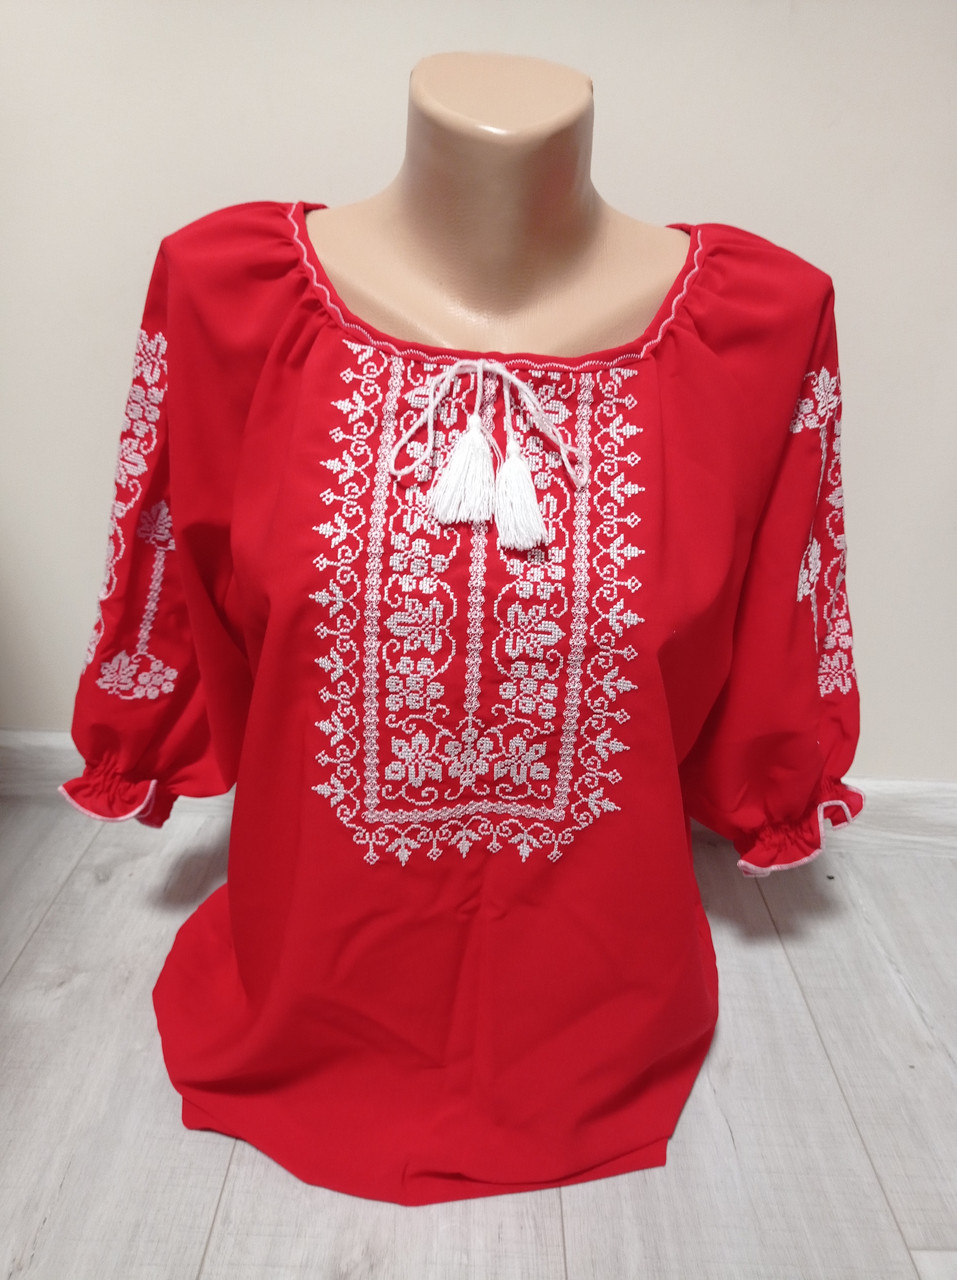 Жіноча червона вишиванка з вишивкою Україна УкраїнаТД 42-50 розміри